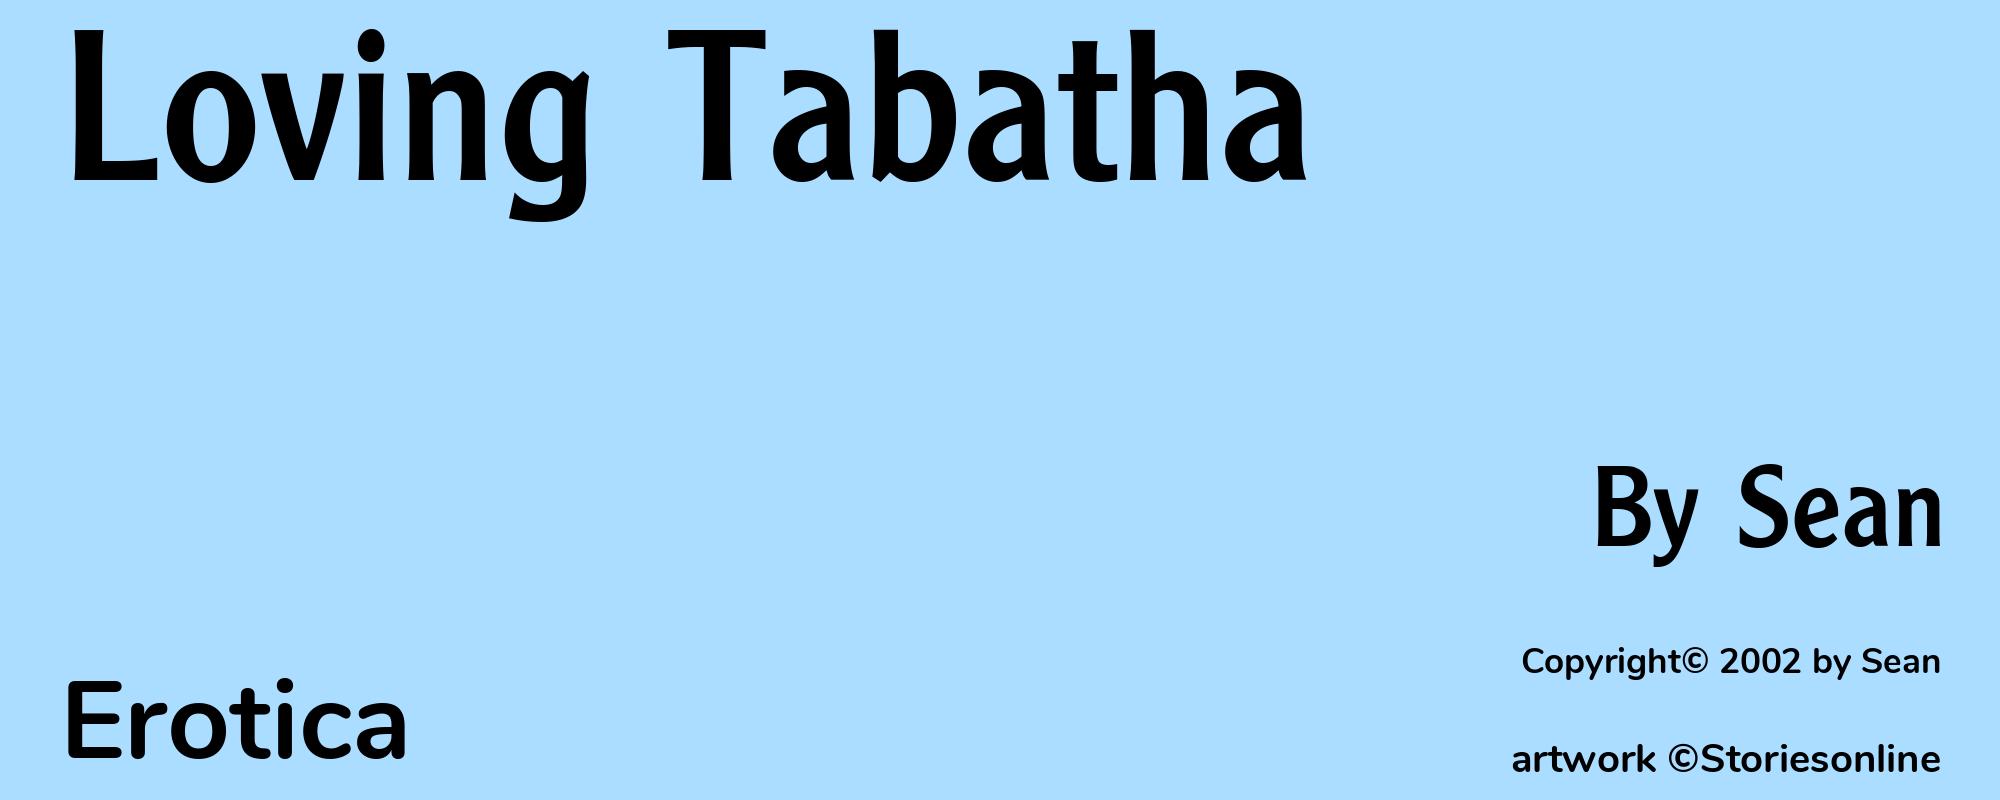 Loving Tabatha - Cover